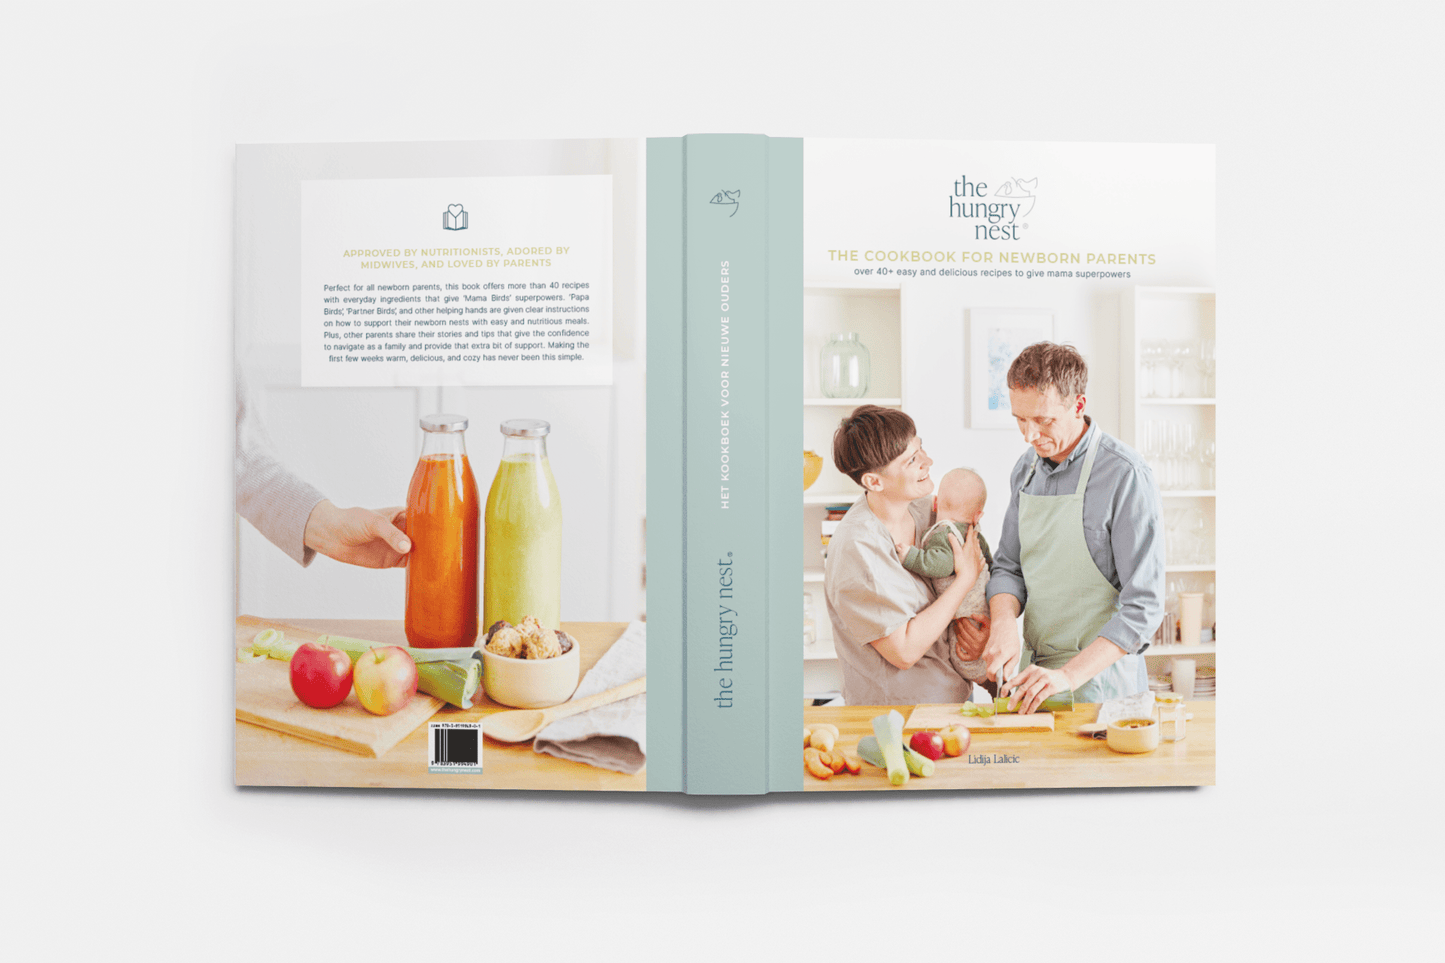 the hungry nest - Kochbuch für fischgebackene Eltern